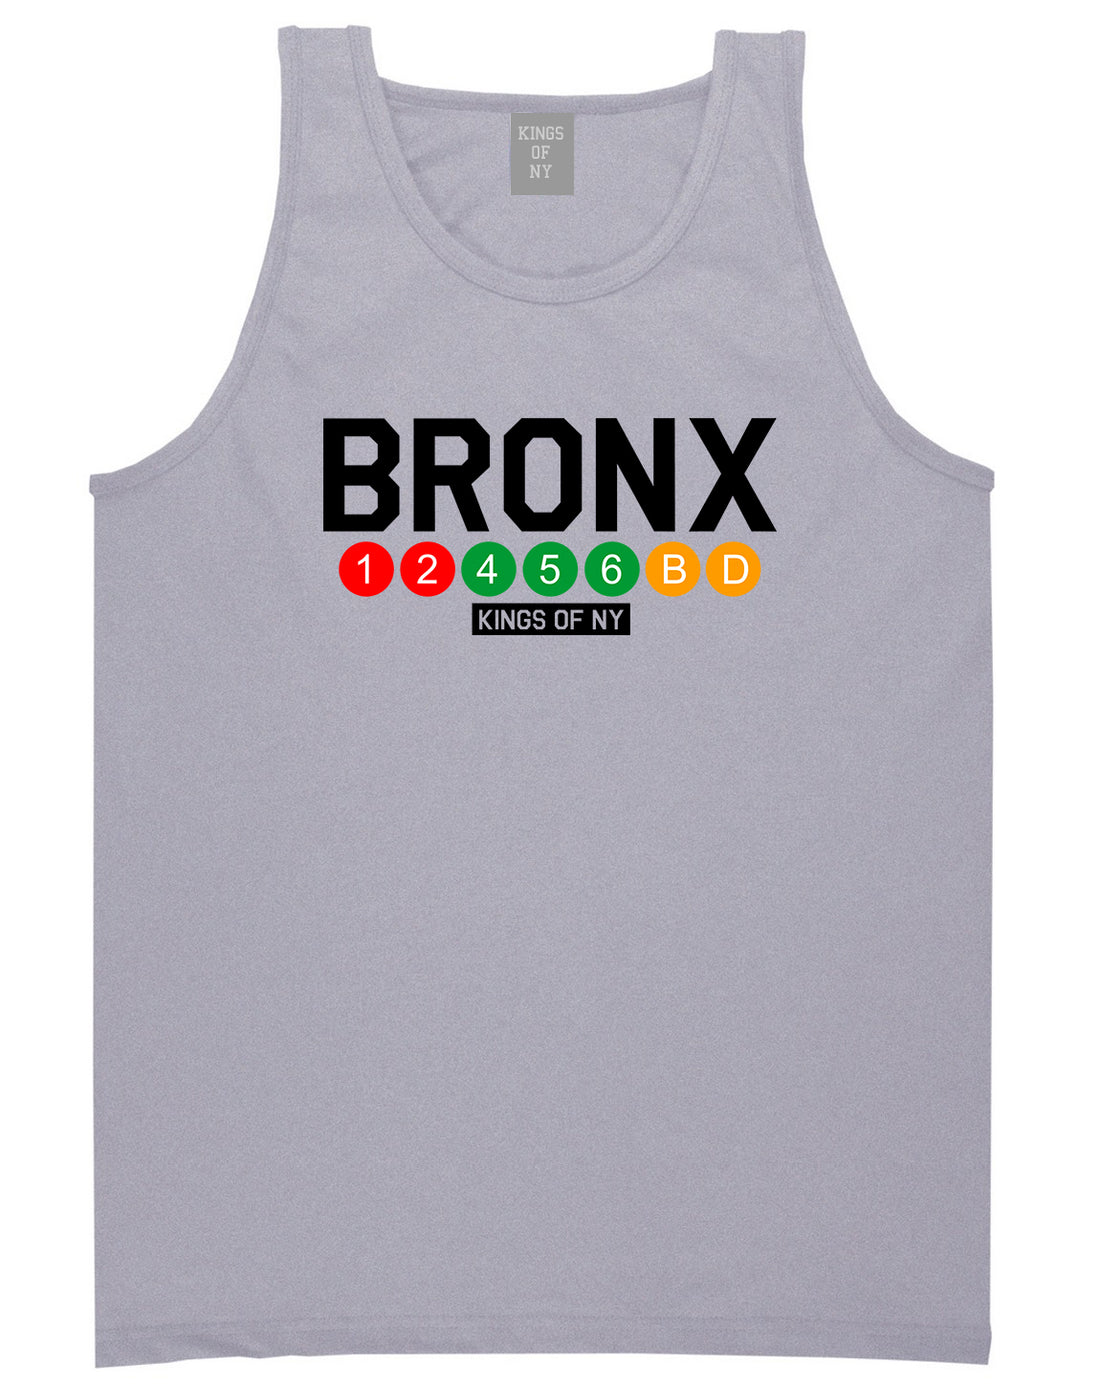 Bronx Transit Logos Tank Top Shirt in Grey